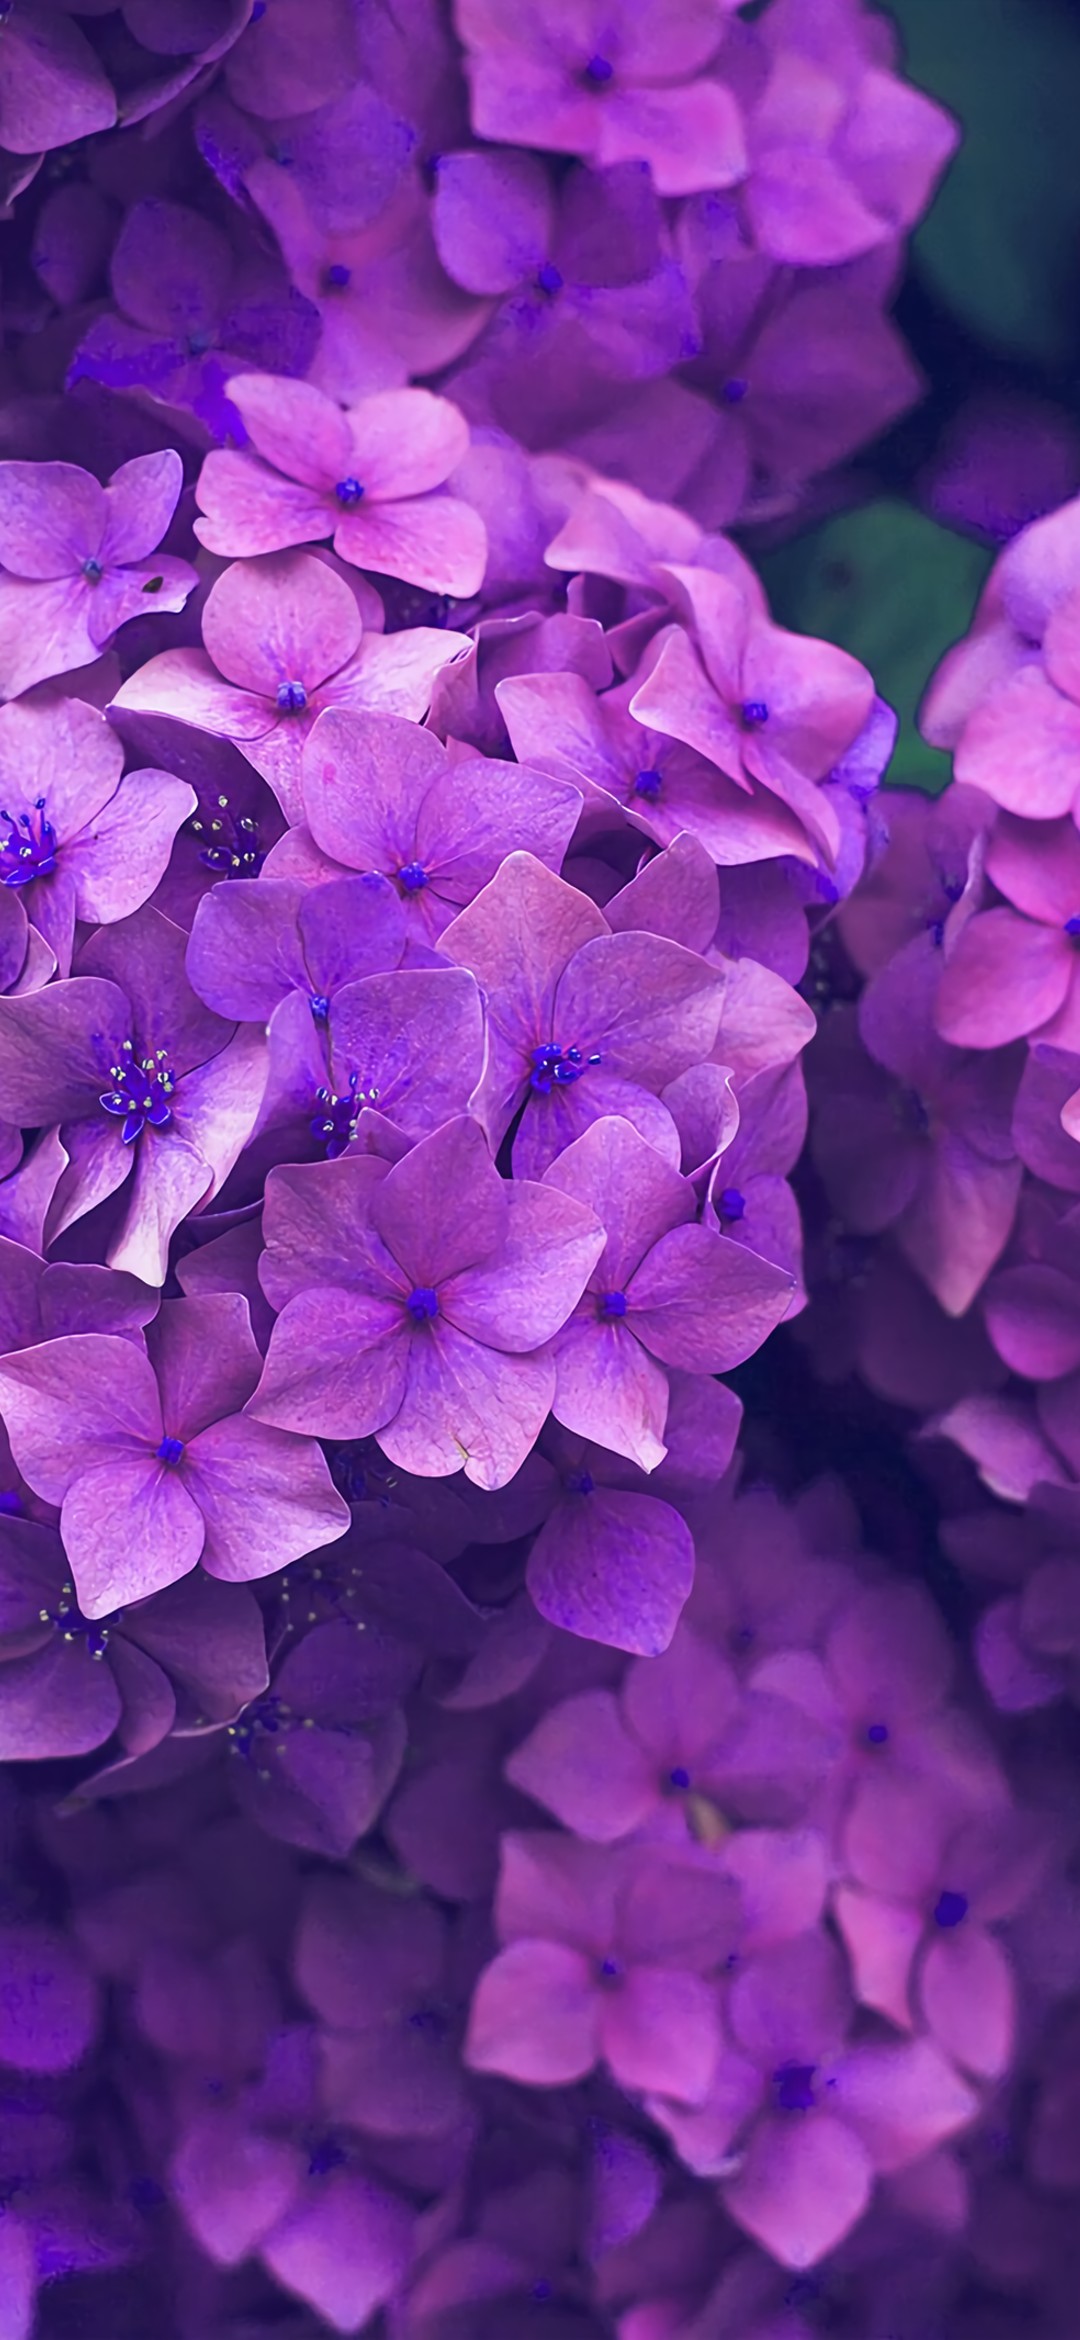 6月 満開の紫の紫陽花 Google Pixel 5 Android スマホ壁紙 待ち受け スマラン